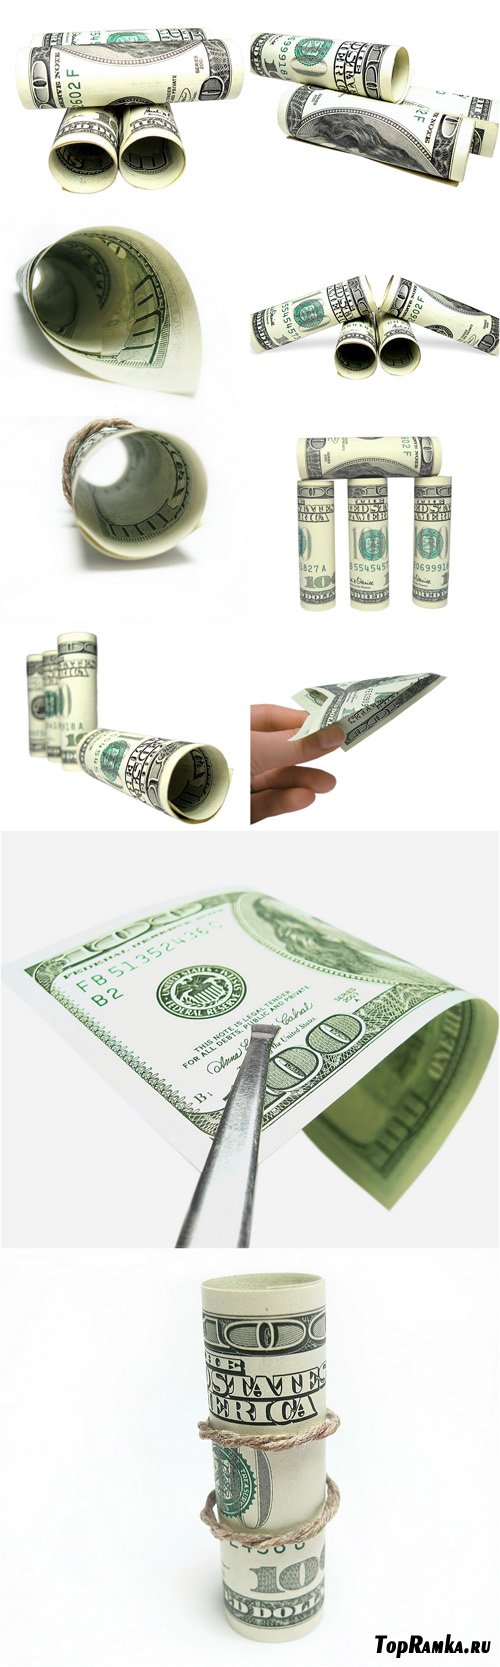 Photo Cliparts - Folded money